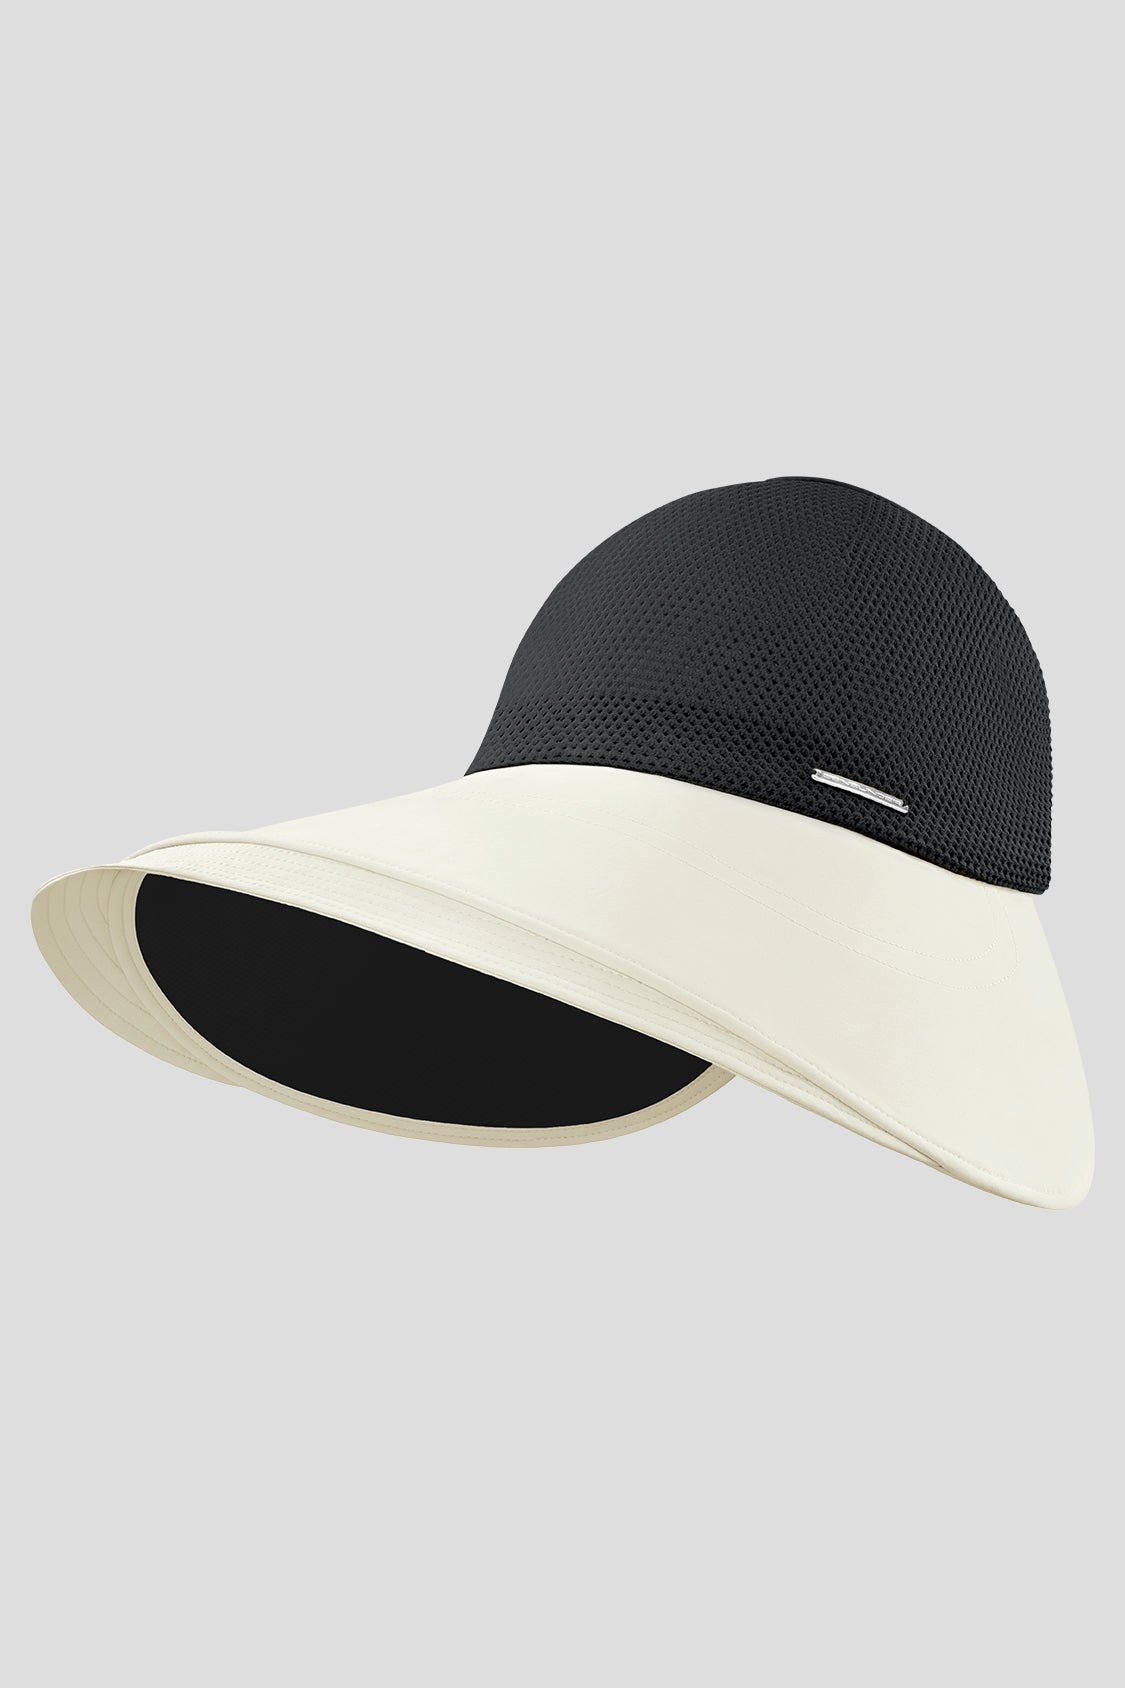 Omelet - Women's Sun Protection Hat UPF50+